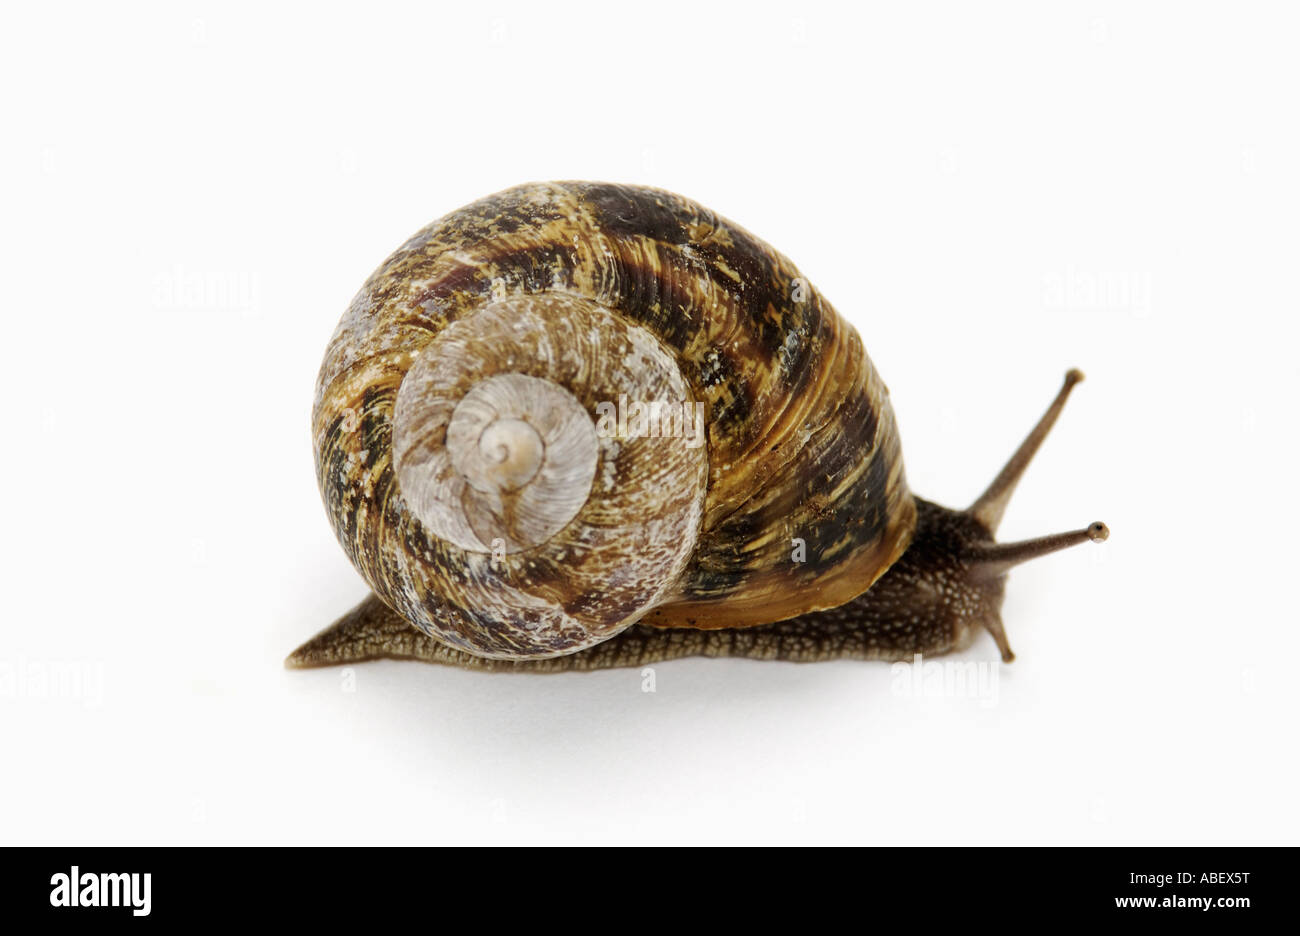 Garden snail on white background Stock Photo